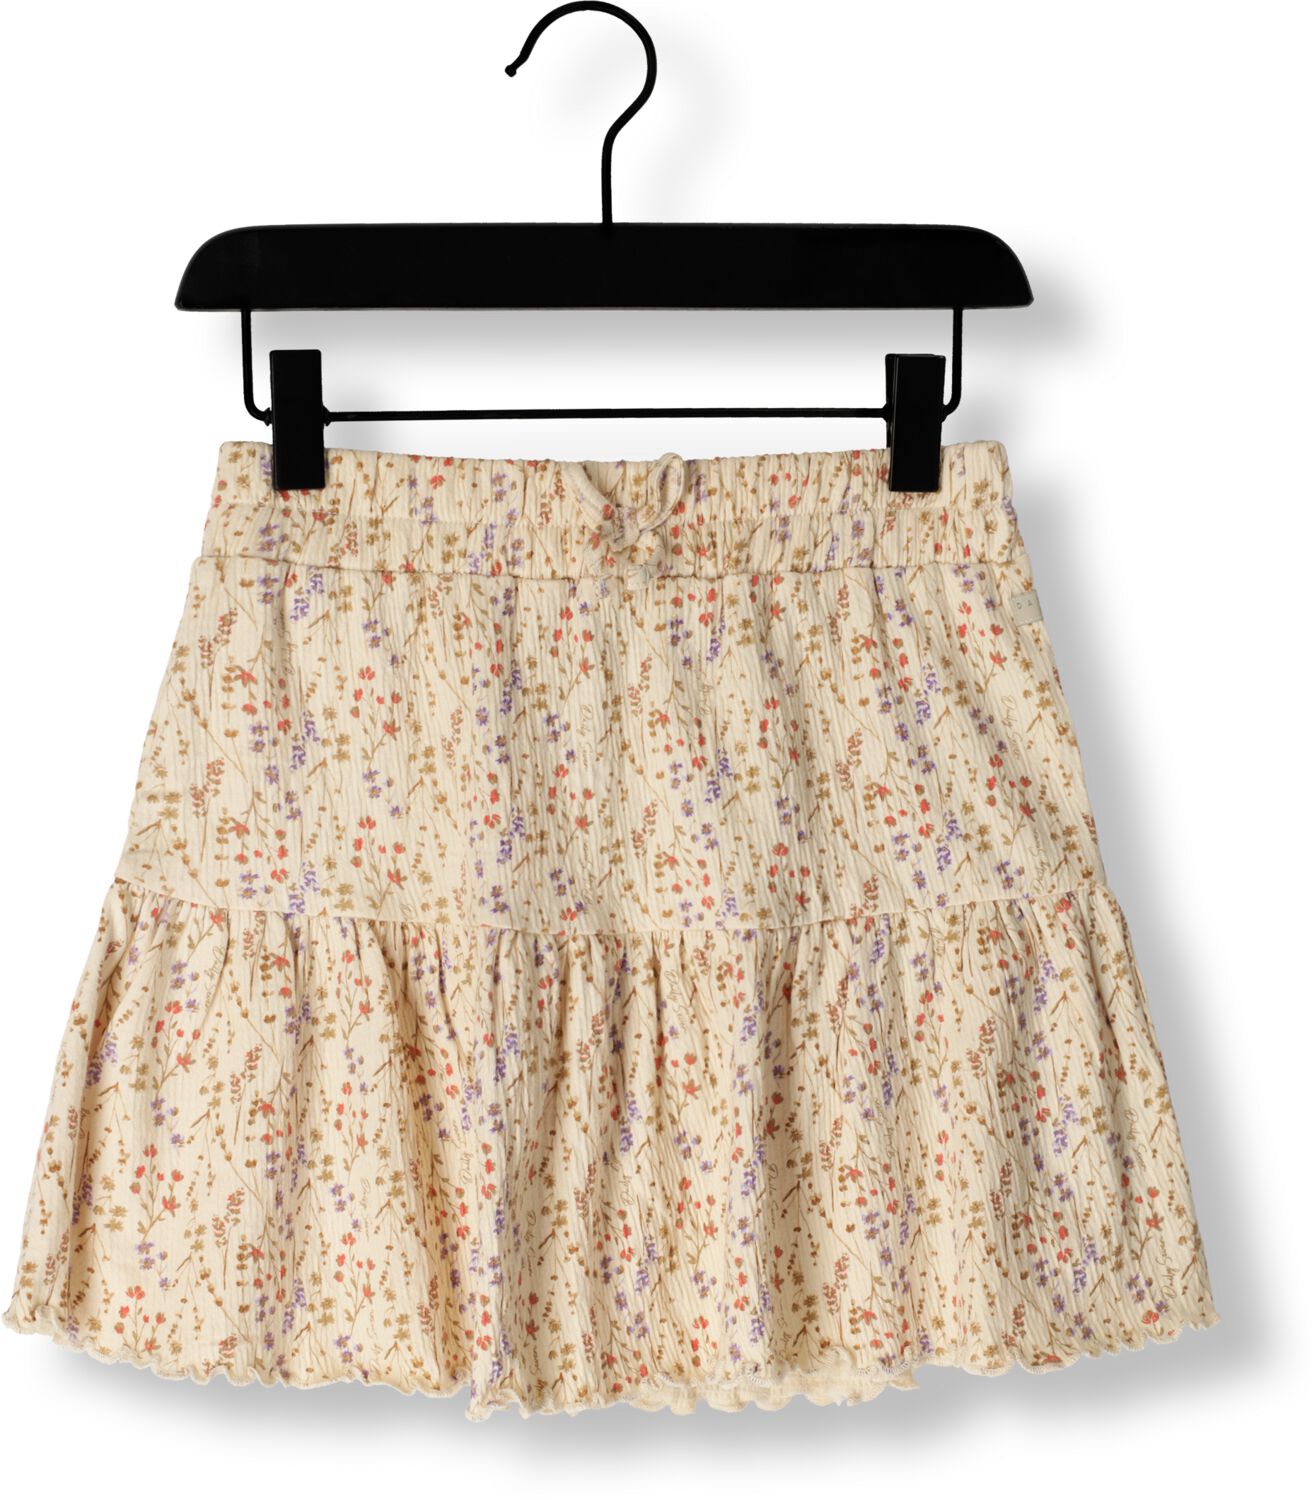 DAILY7 Meisjes Rokken Skirt Structure Mille Fleur Zand